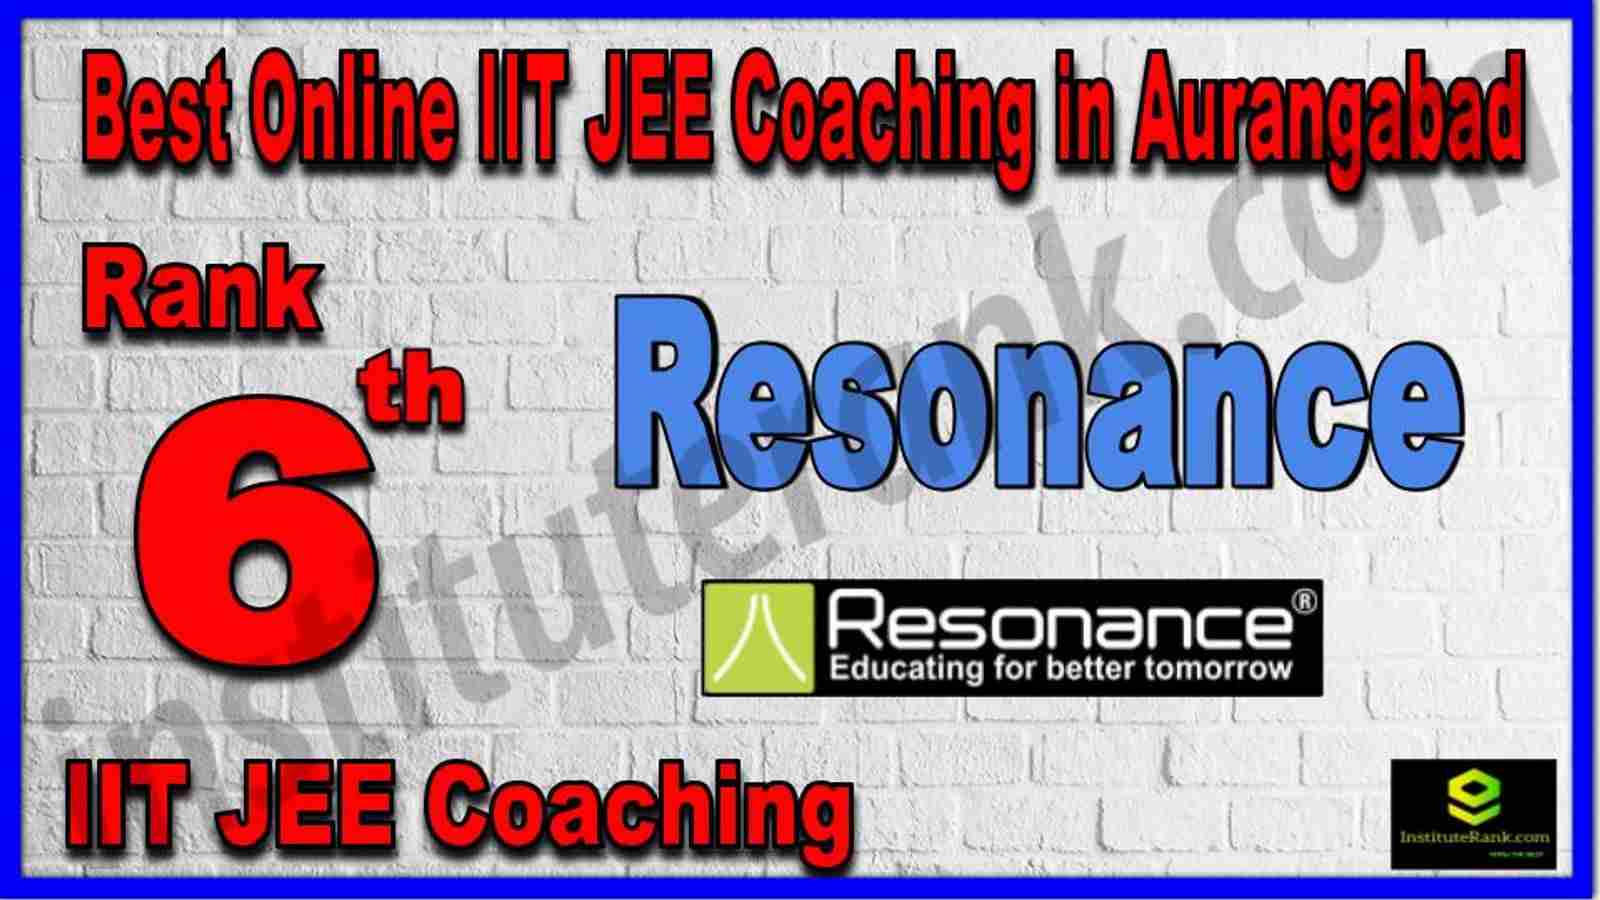 Rank 6th Best Online IIT JEE Coaching in Aurangabad